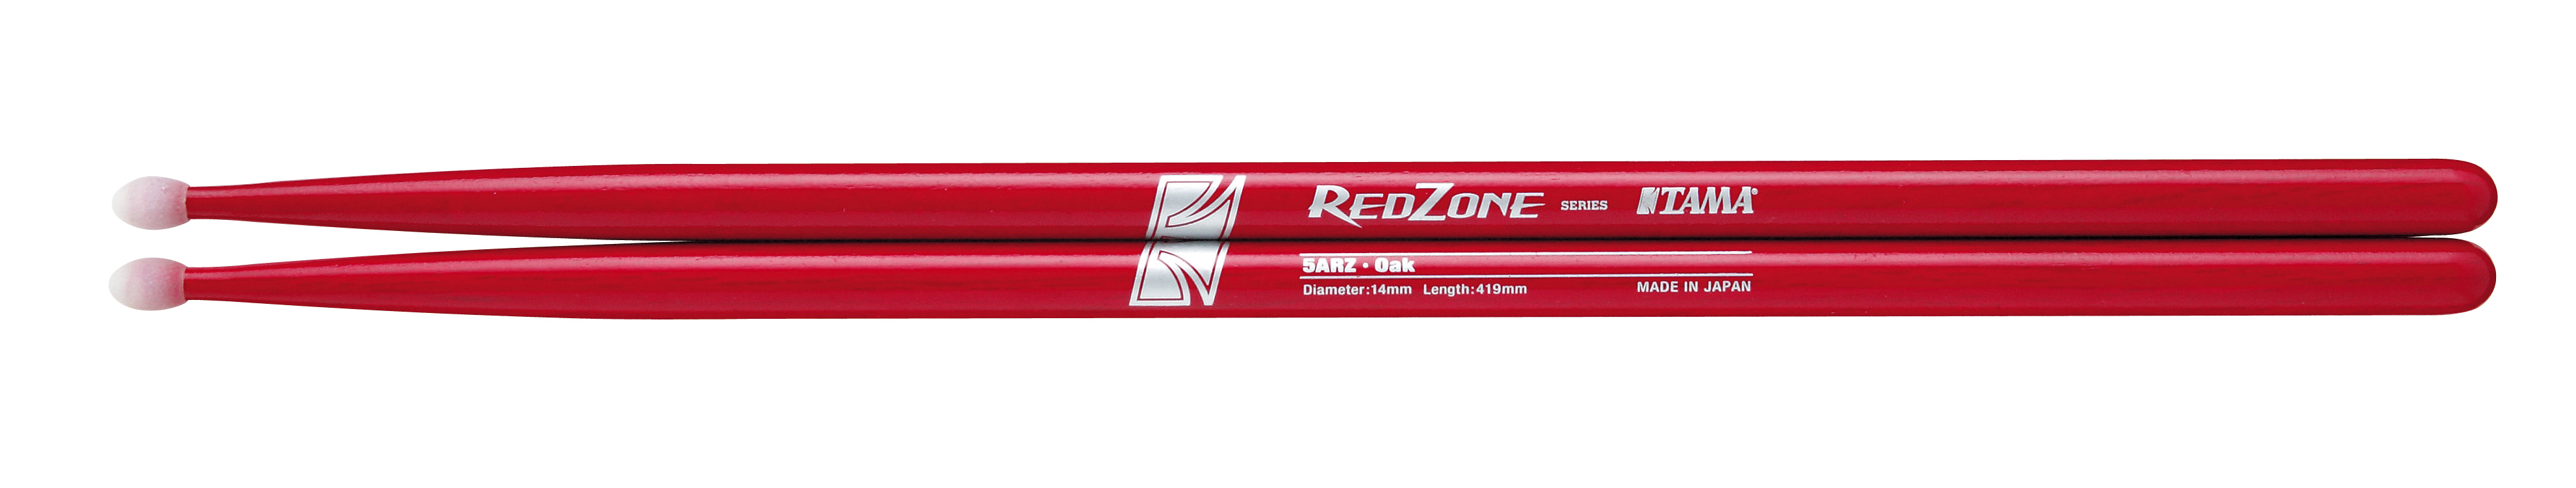 5A Redzone Drumsticks Silver Logo